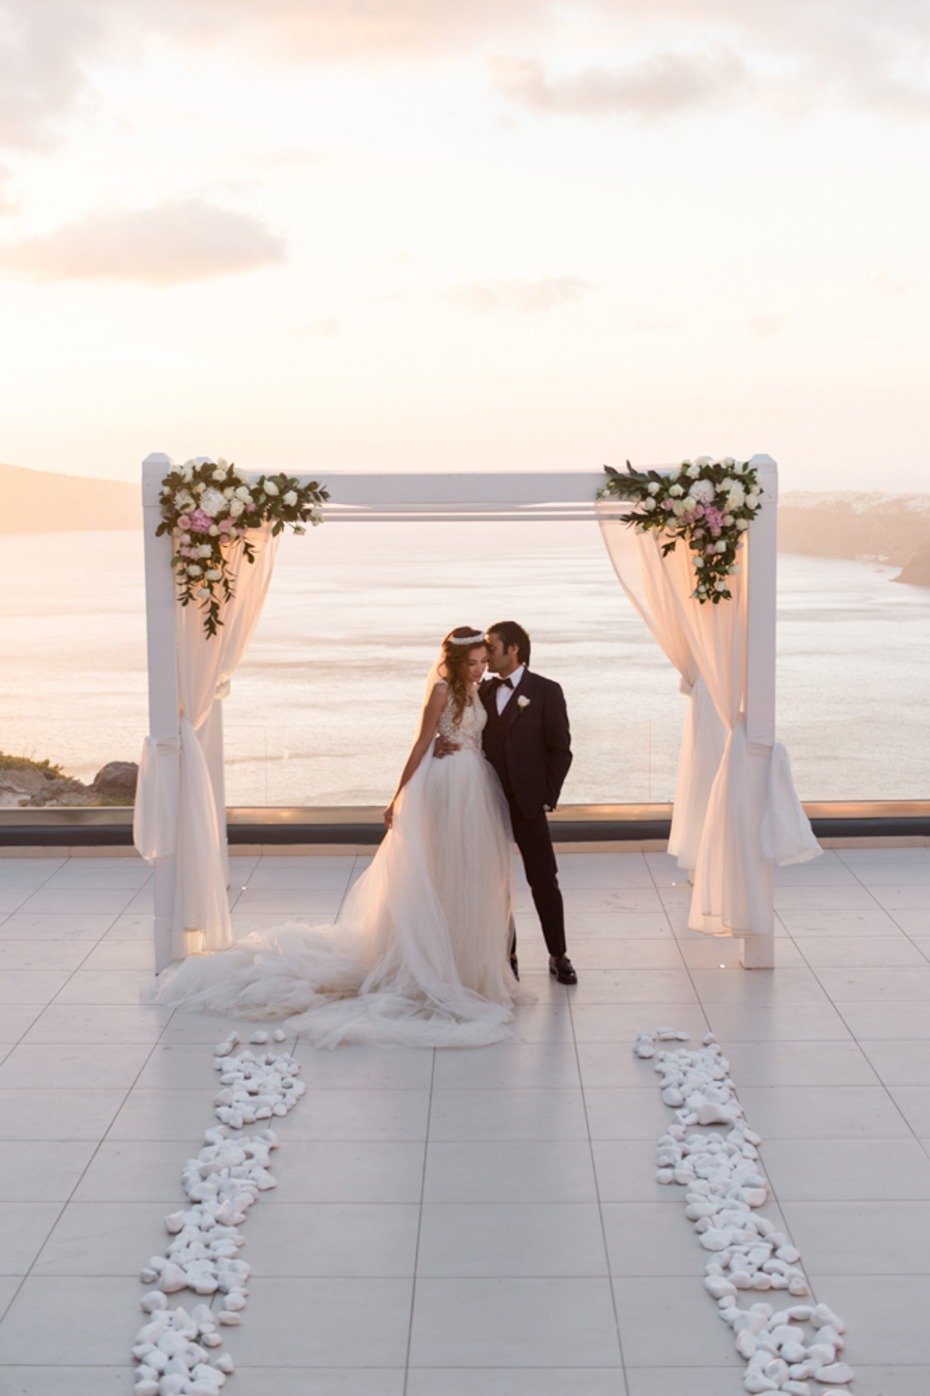 Dreamy wedding in Santorini